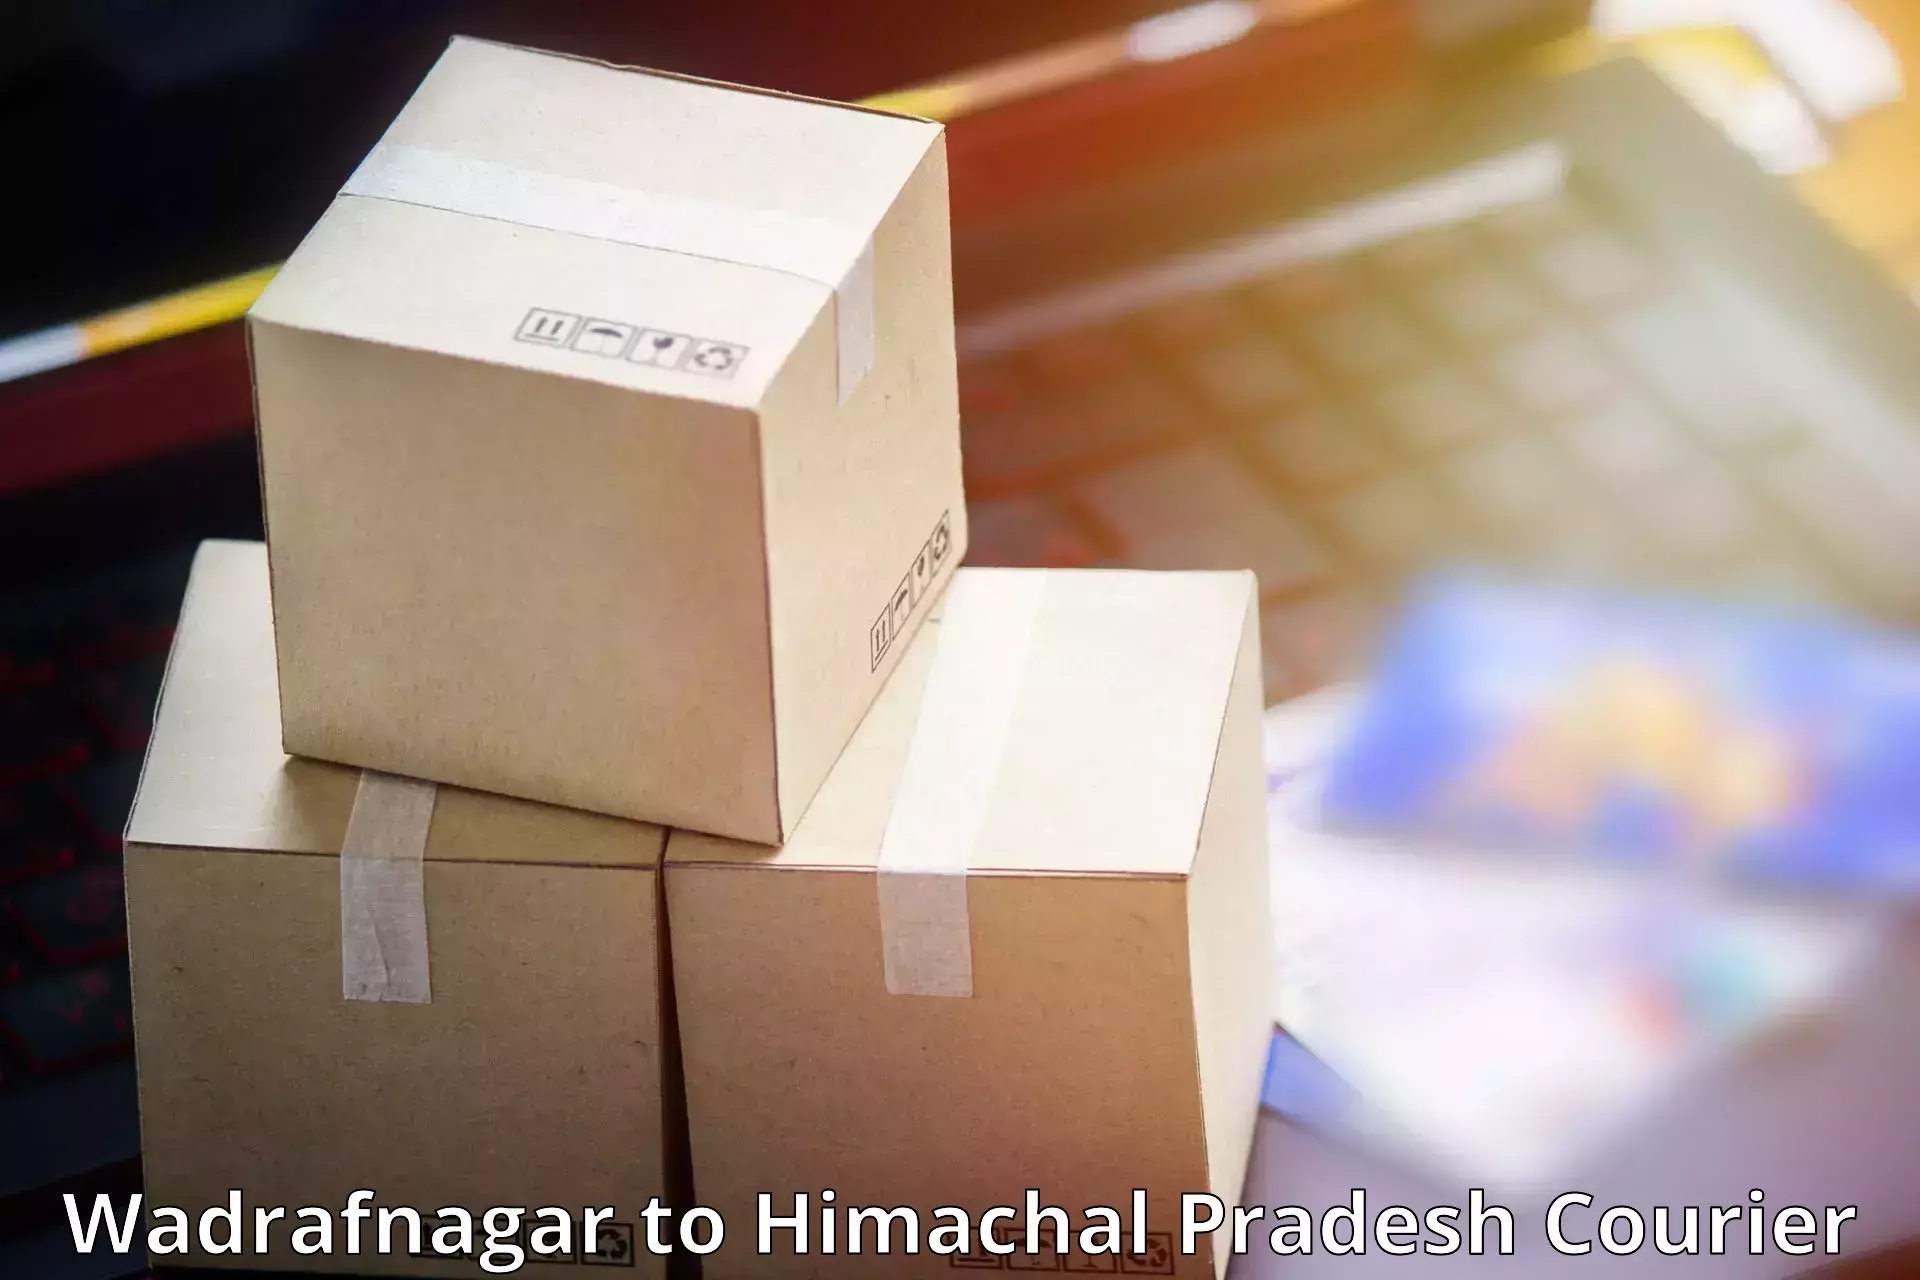 Custom courier packages in Wadrafnagar to Kullu